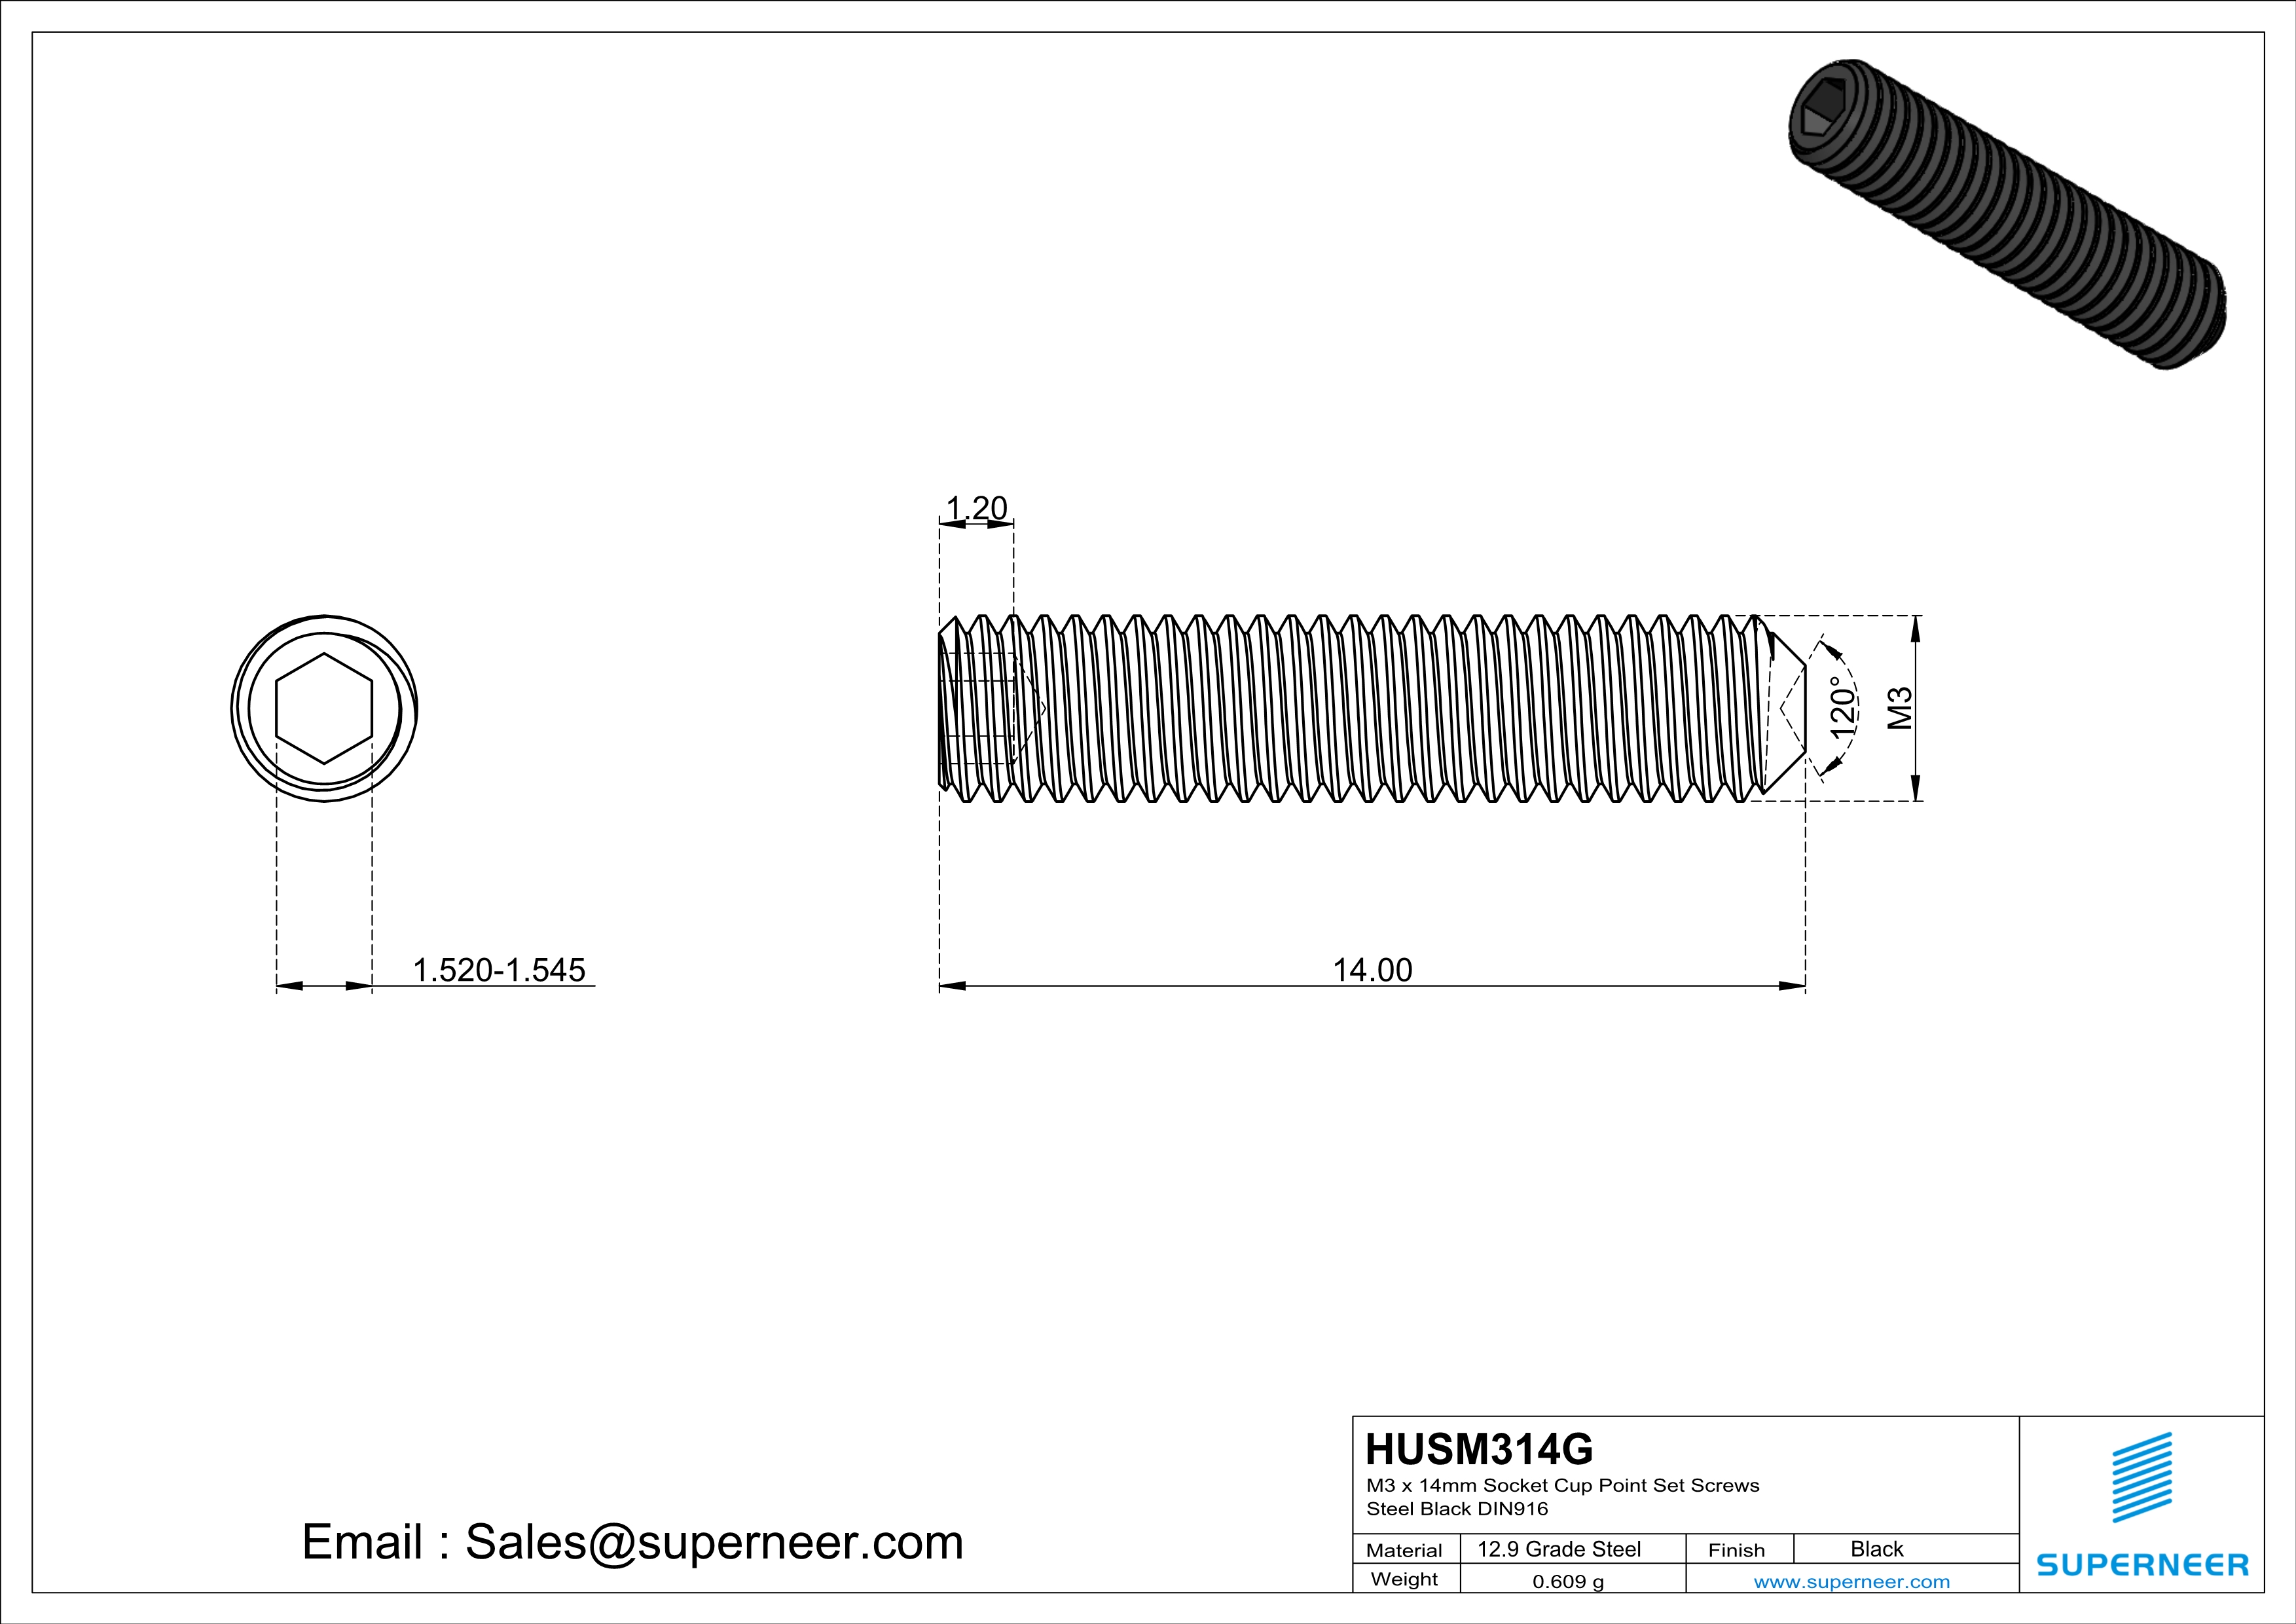 M3 x 14mm Socket Cup Point Set Screws 12.9 Carbon Steel Black DIN916